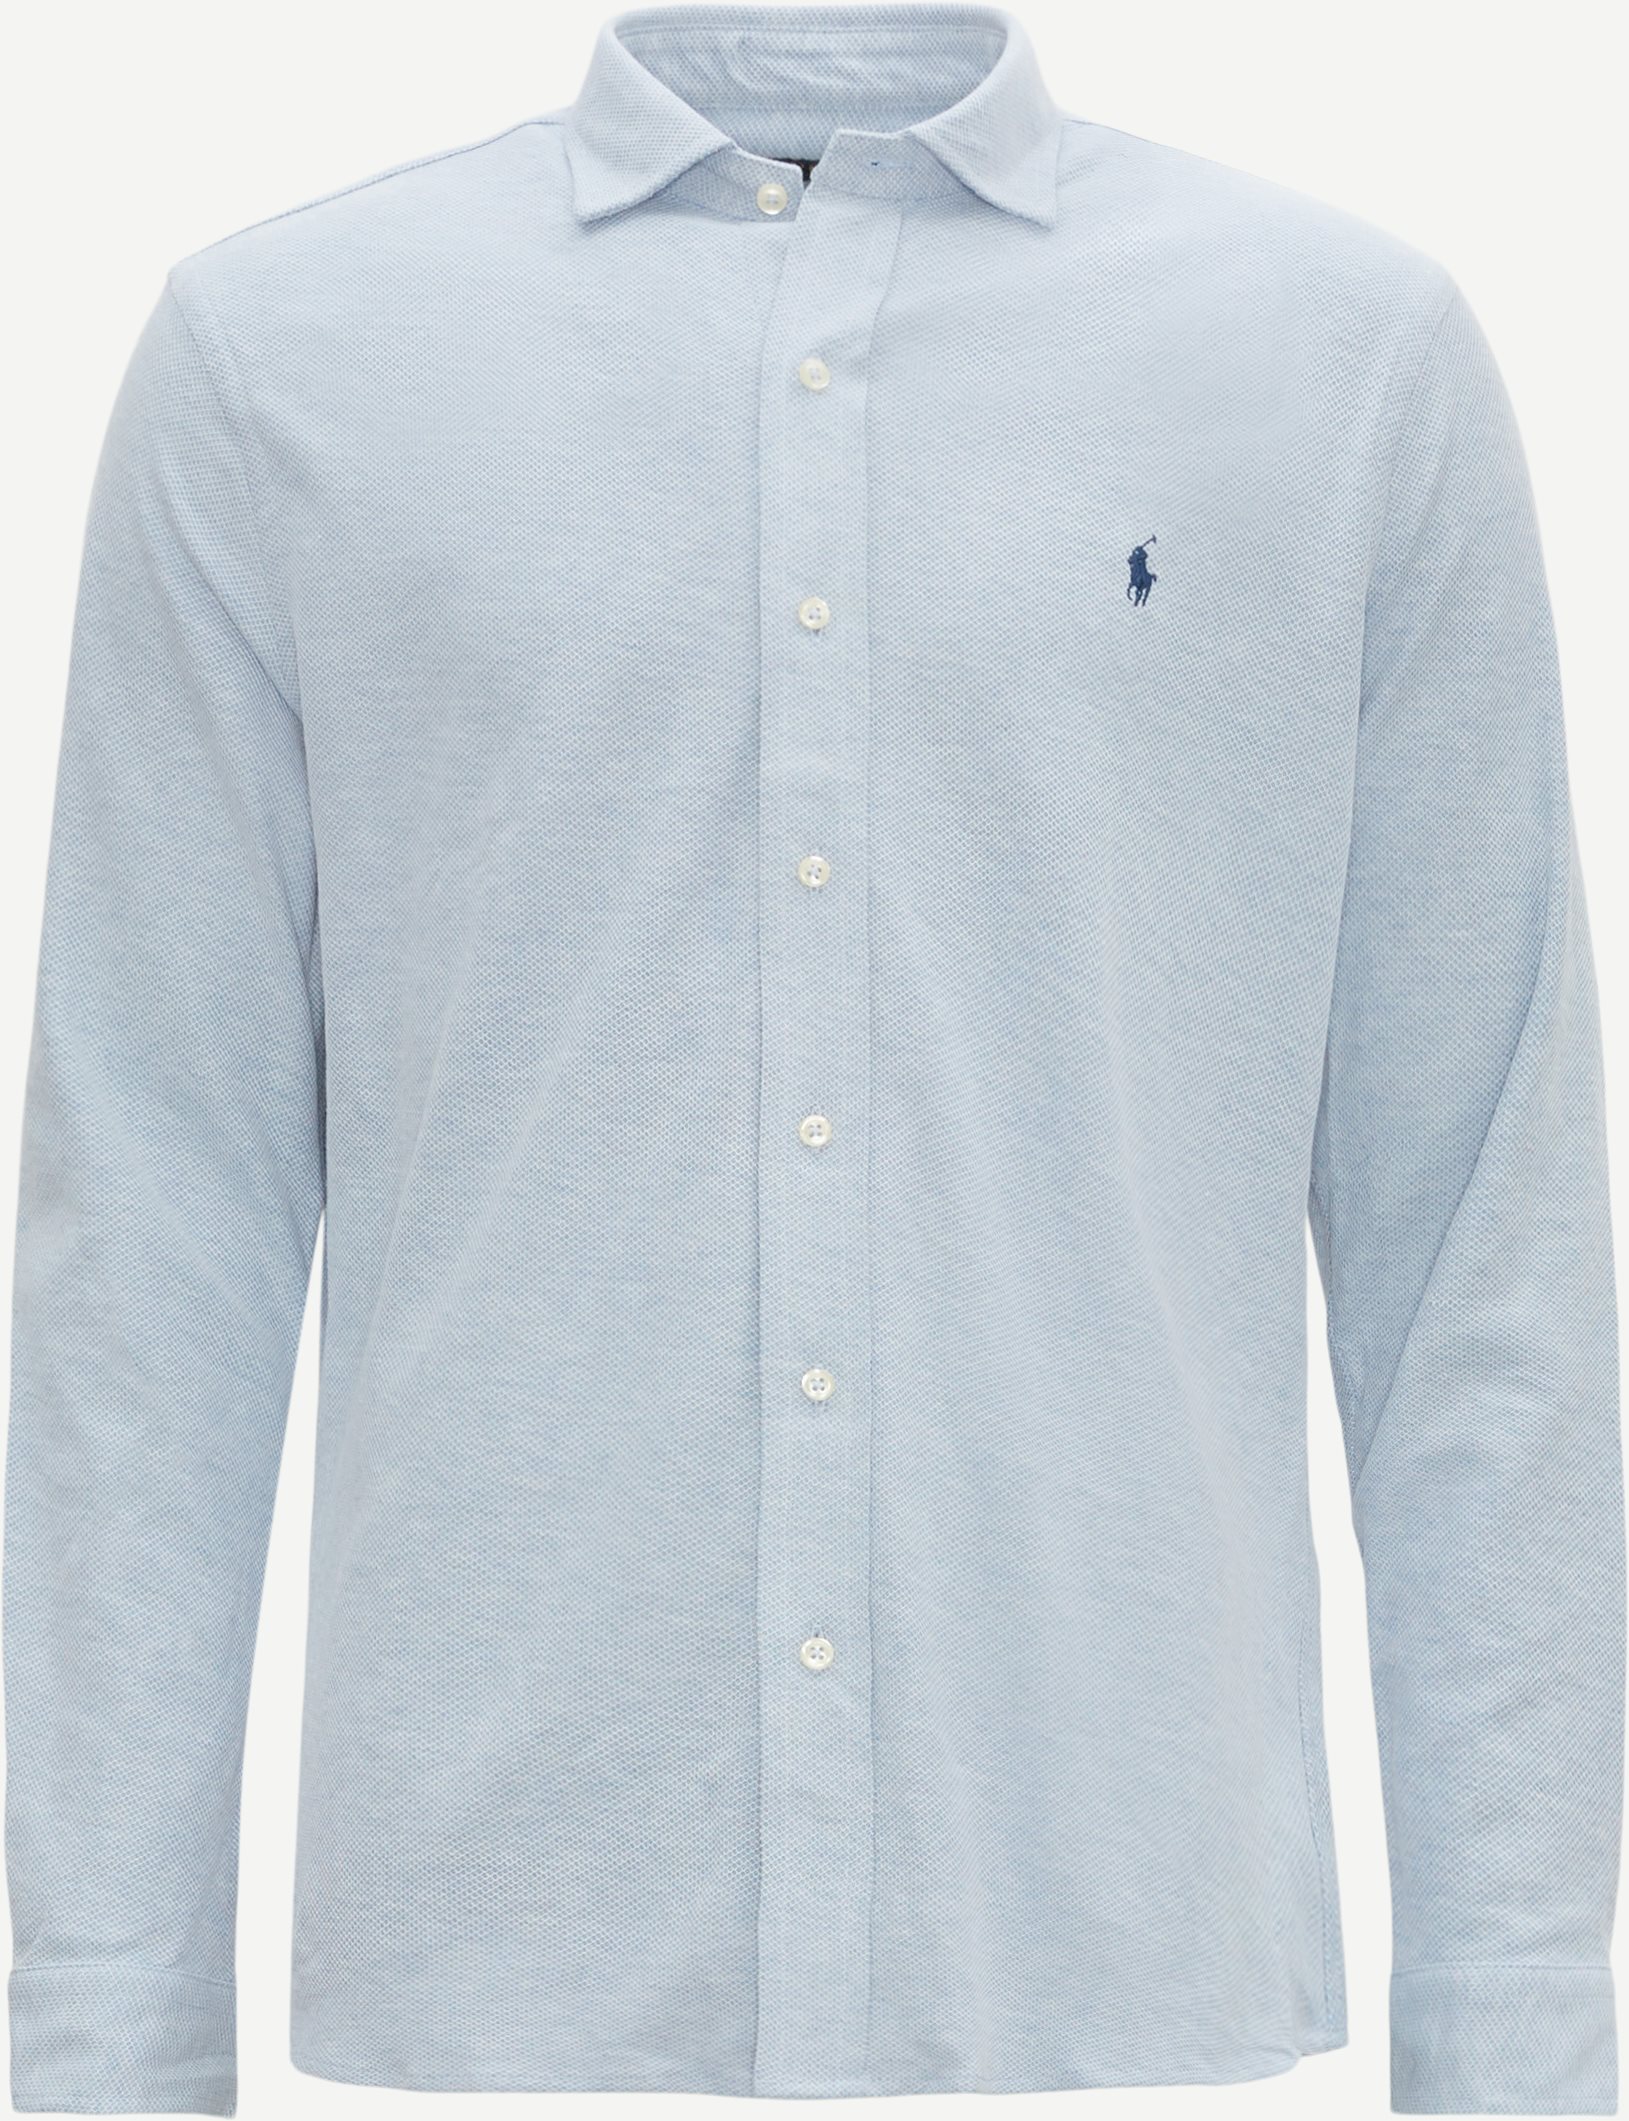 Polo Ralph Lauren Shirts 710909660 Blue